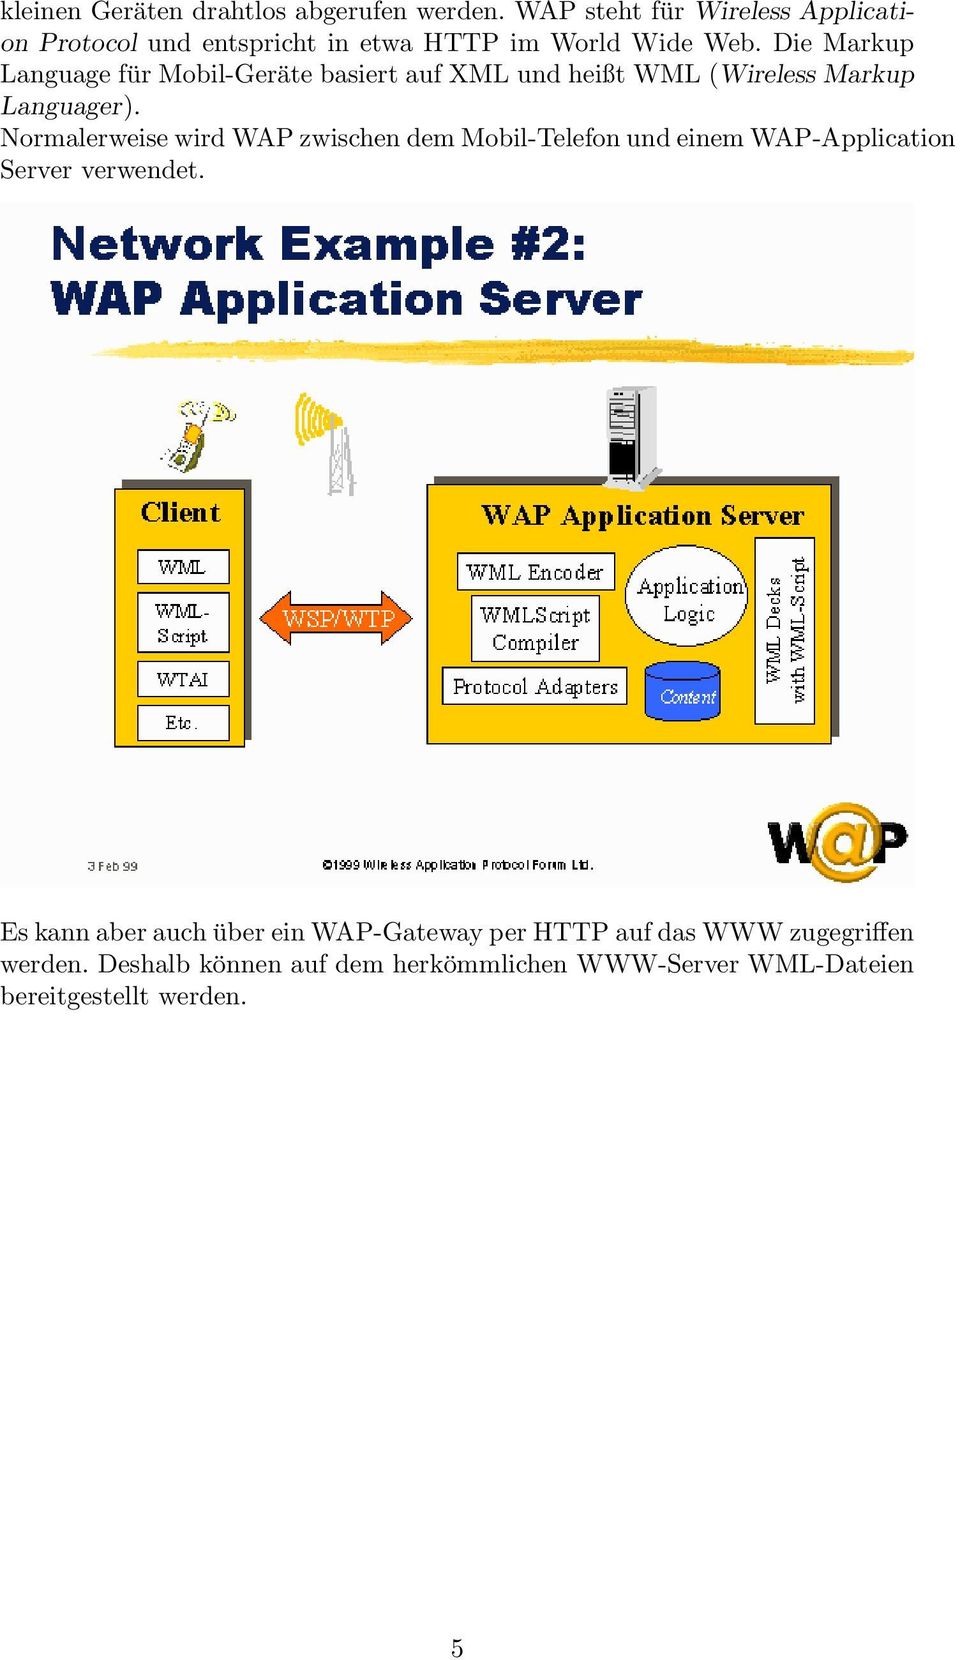 Die Markup Language für Mobil-Geräte basiert auf XML und heißt WML (Wireless Markup Languager).